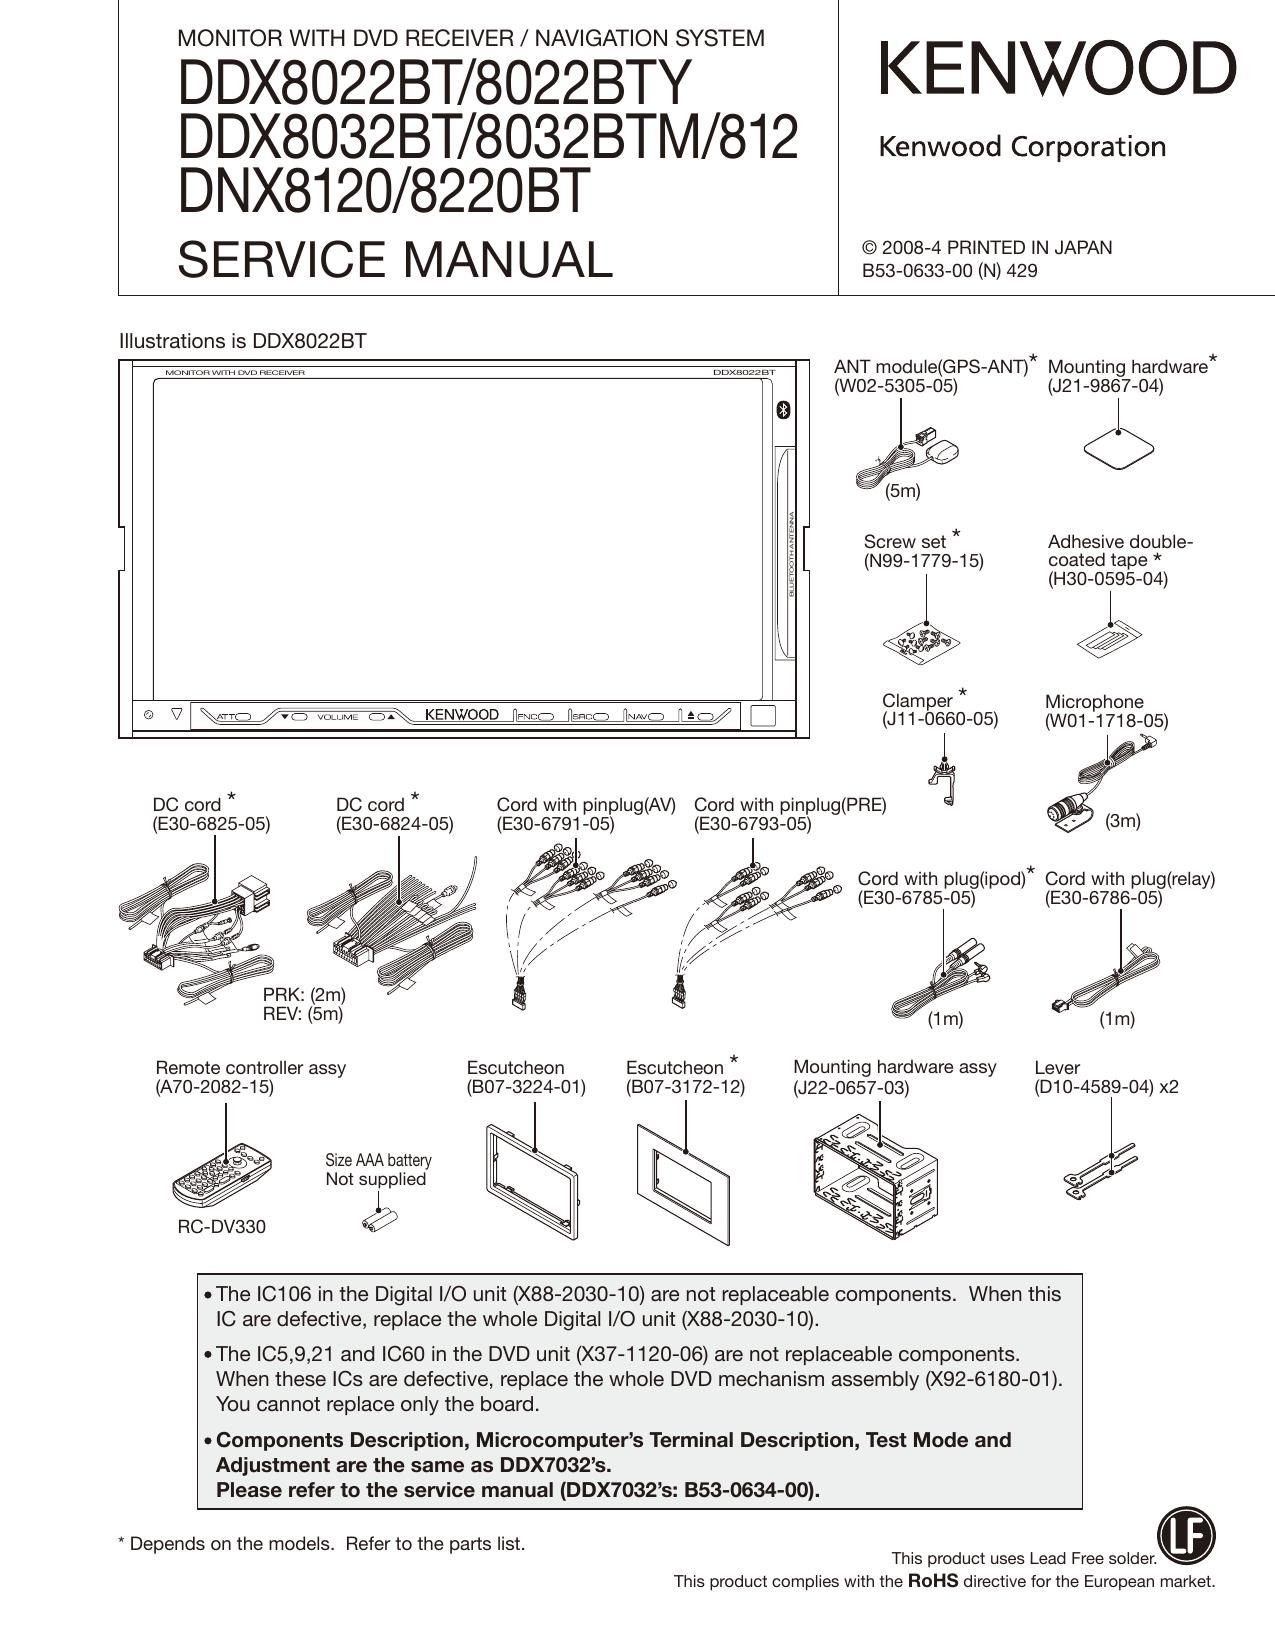 Kenwood DDX 8032 BTM Service Manual